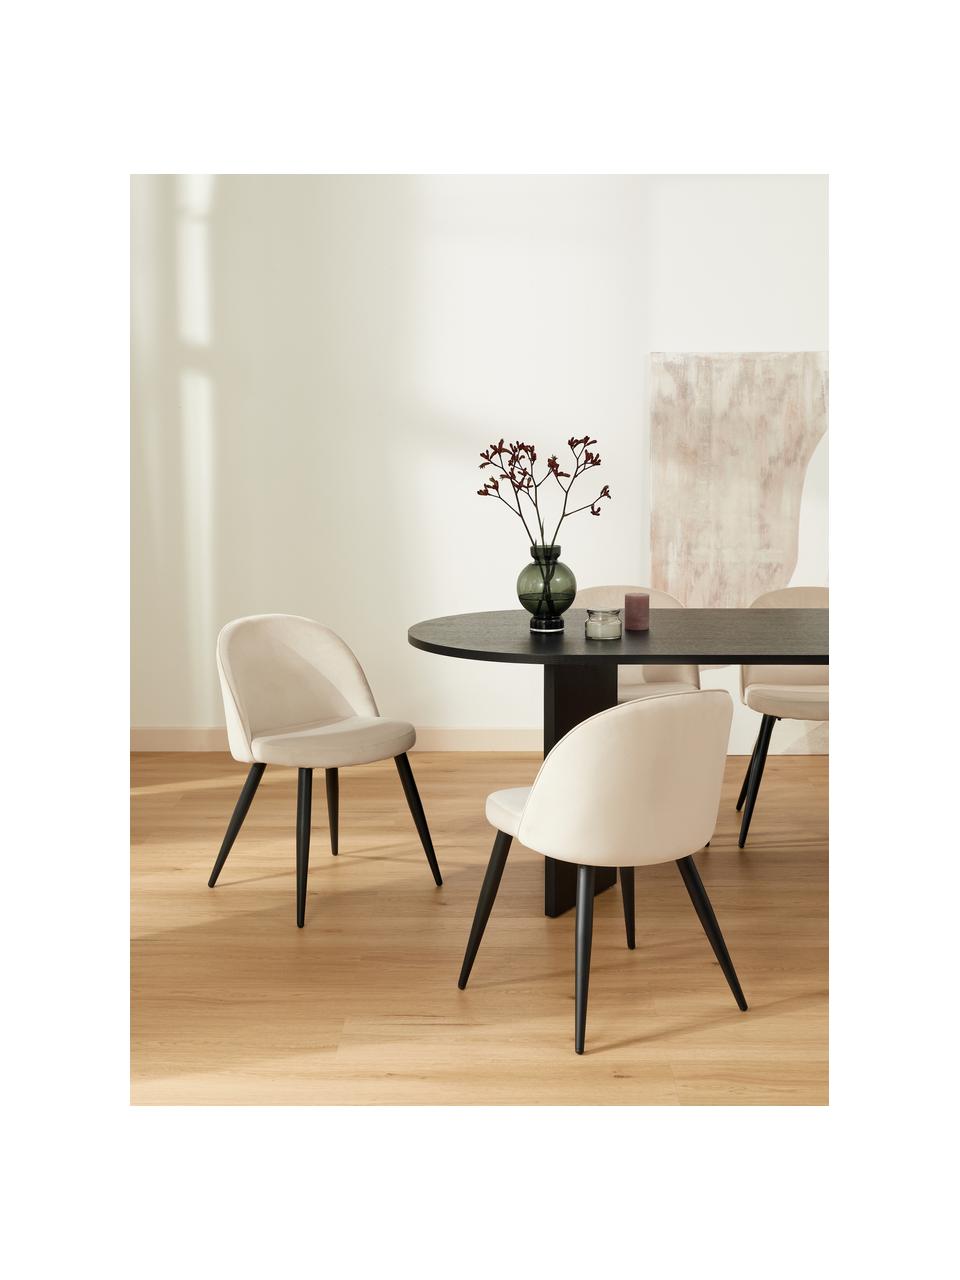 Fluwelen stoelen Amy in crèmewit, 2 stuks, Bekleding: fluweel (polyester), Poten: gepoedercoat metaal, Fluweel crèmewit, B 51 x D 55 cm